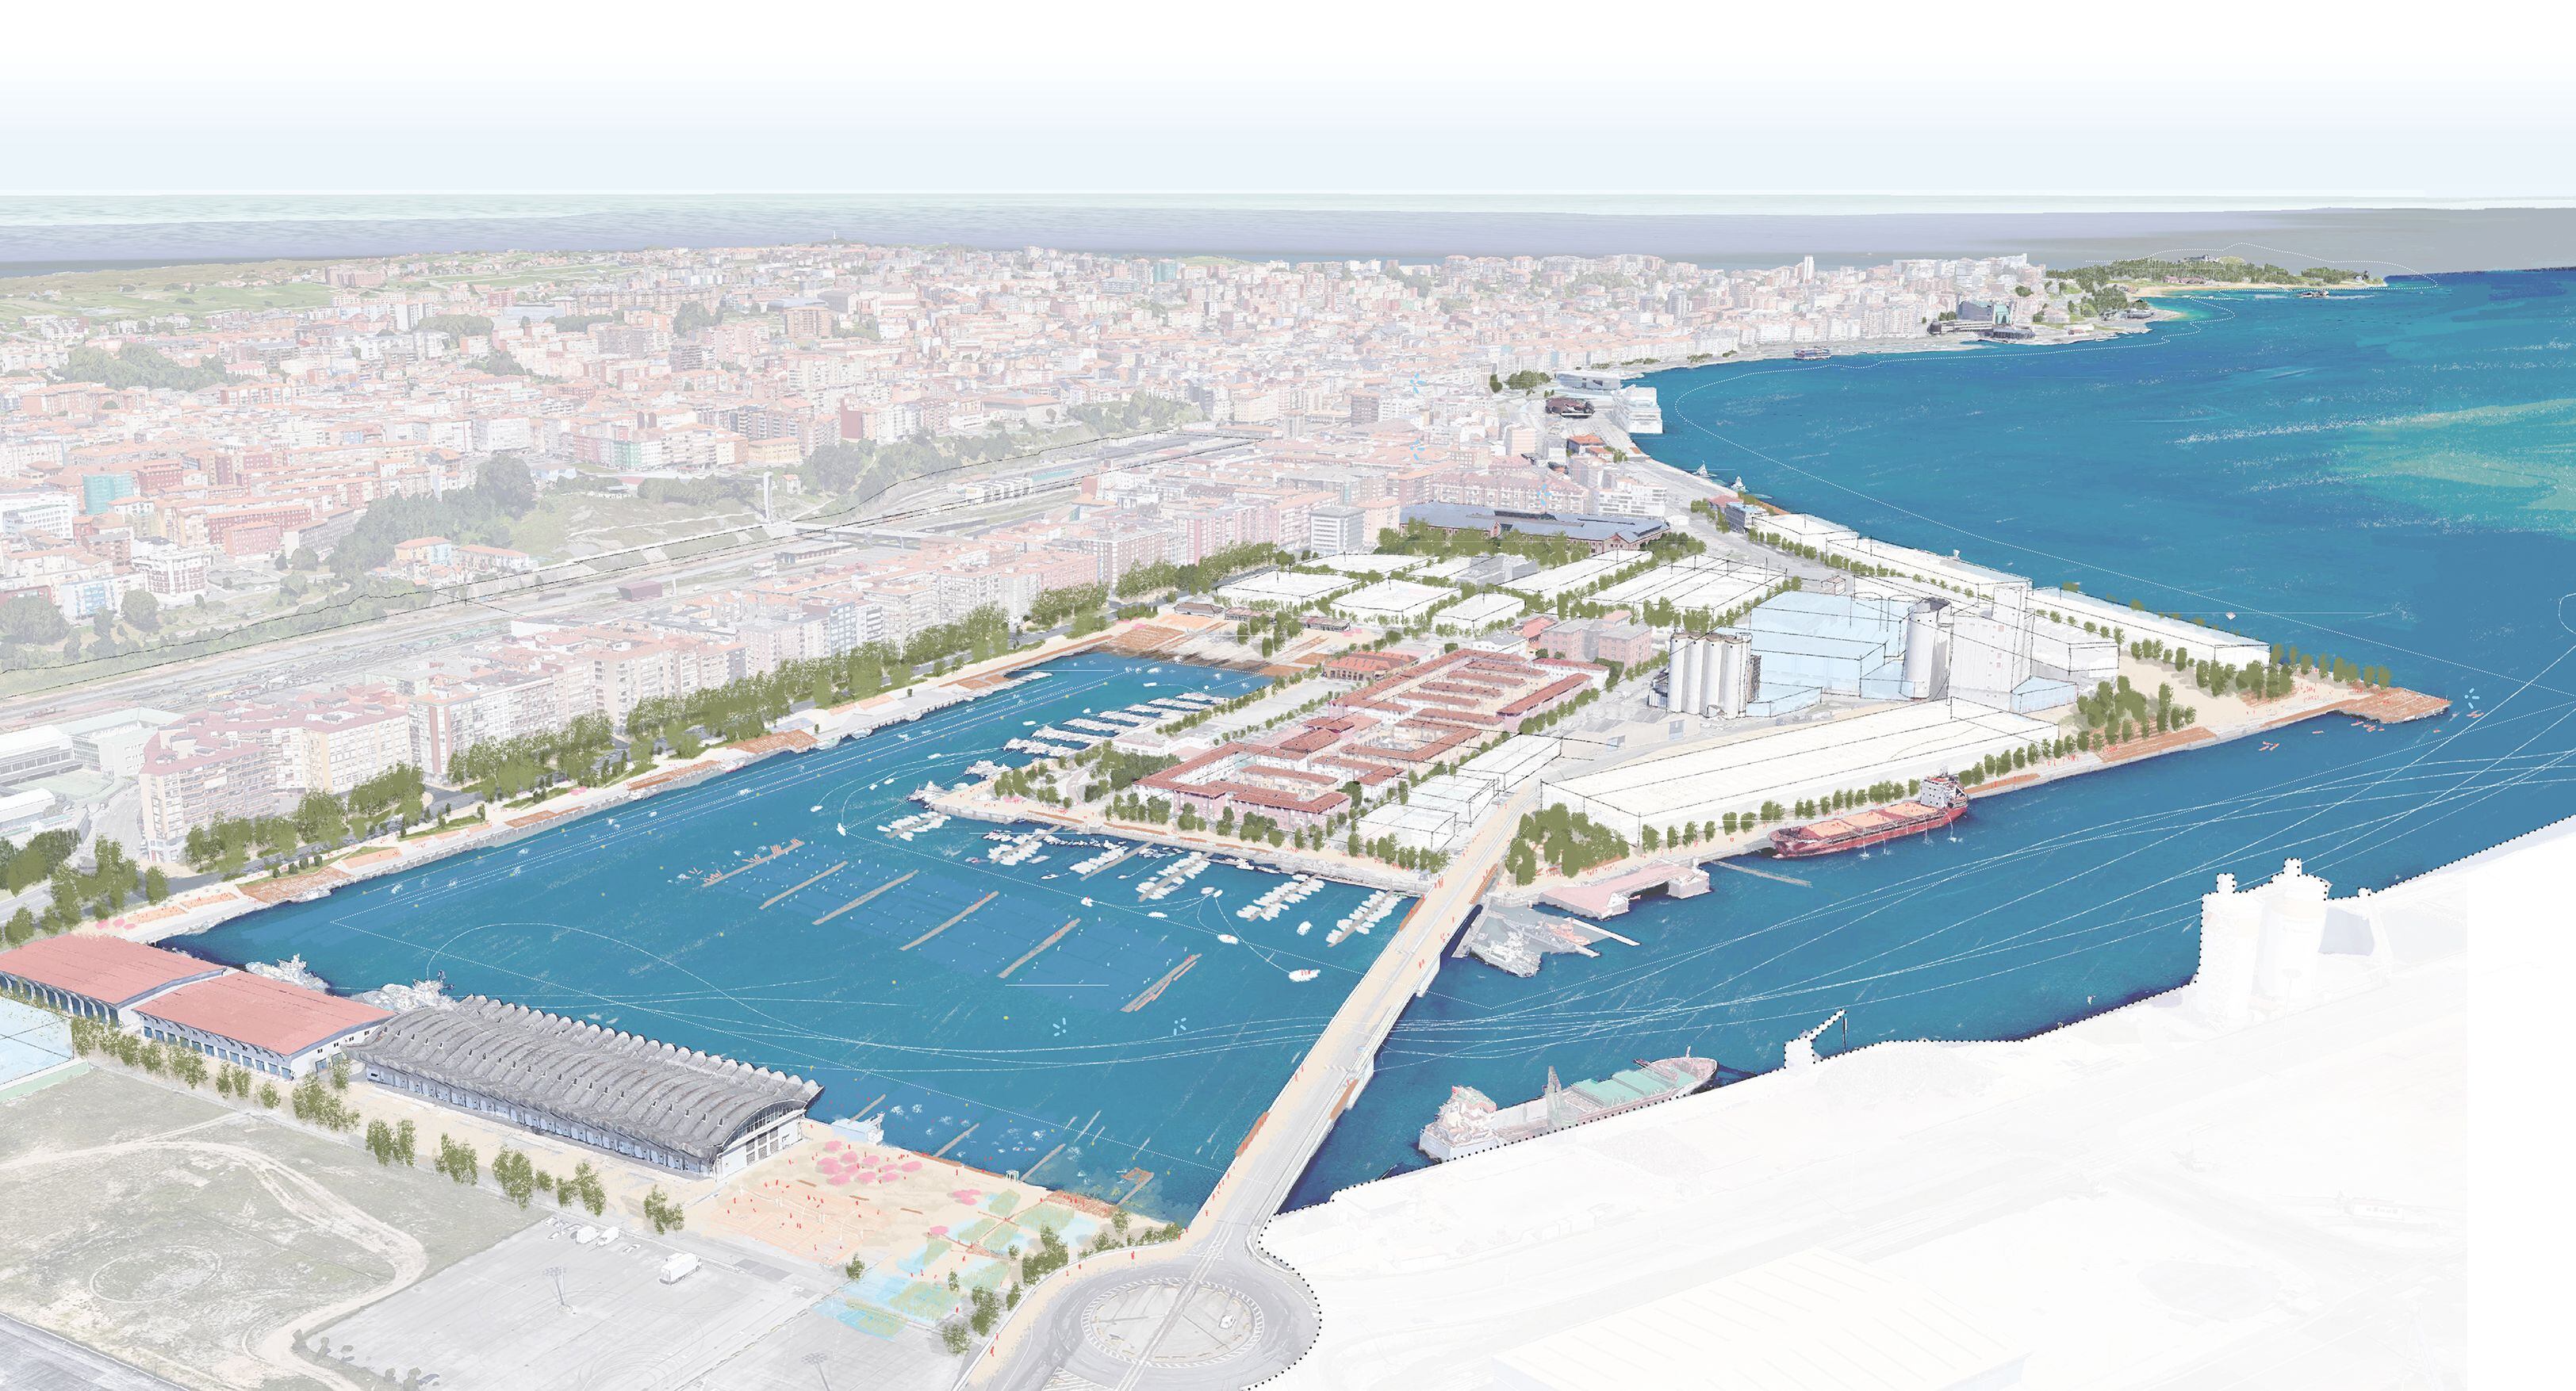 El futuro de Santander podría pasar por reconquistar parte del frente marítimo y transformarlo en un nuevo centro dotado de atractivos equipamientos culturales y actividad económica.